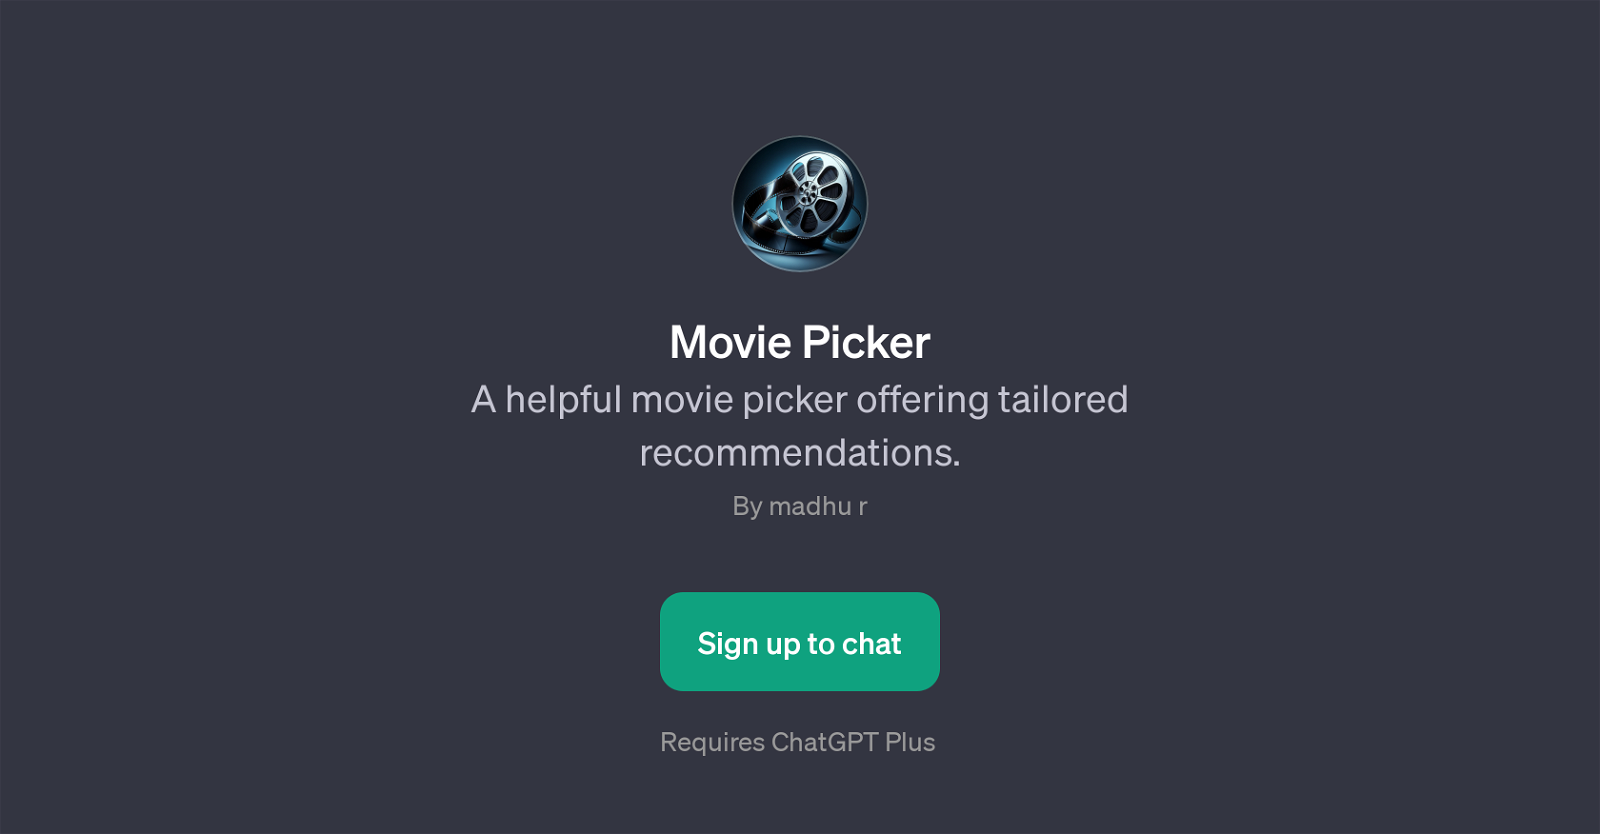 Movie Picker website